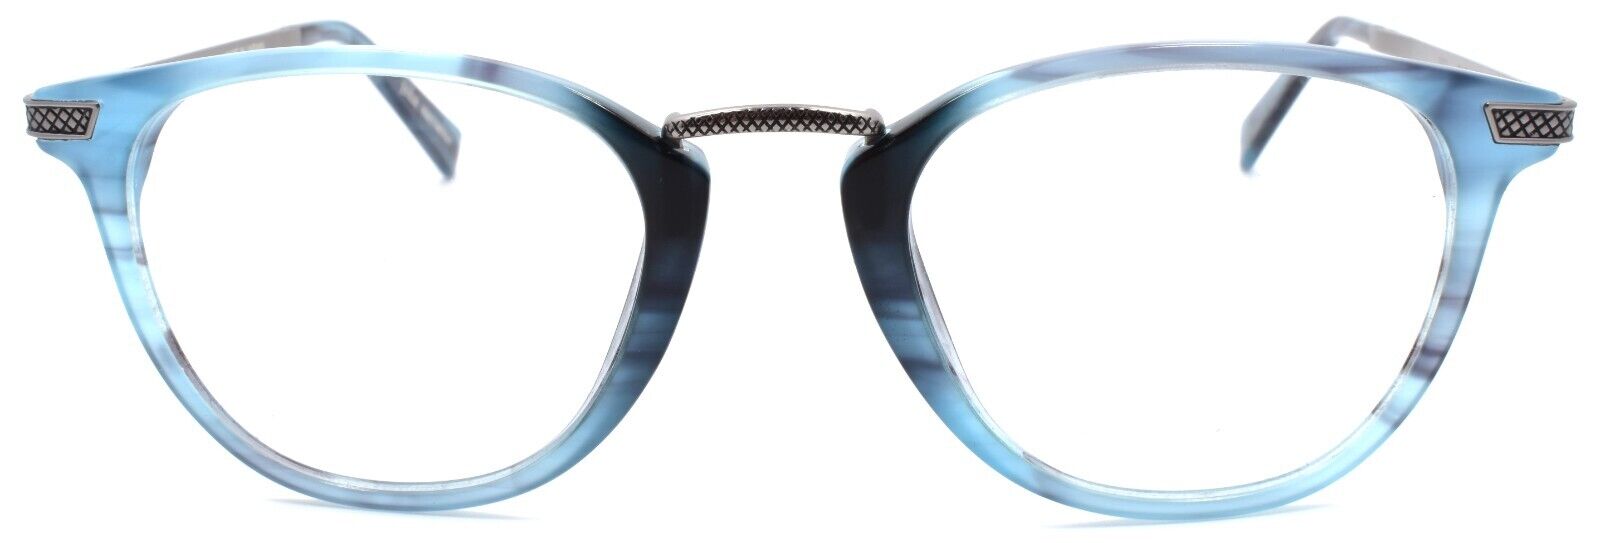 2-John Varvatos V372 Men's Eyeglasses Frames 48-21-145 Blue Horn Japan-751286306057-IKSpecs